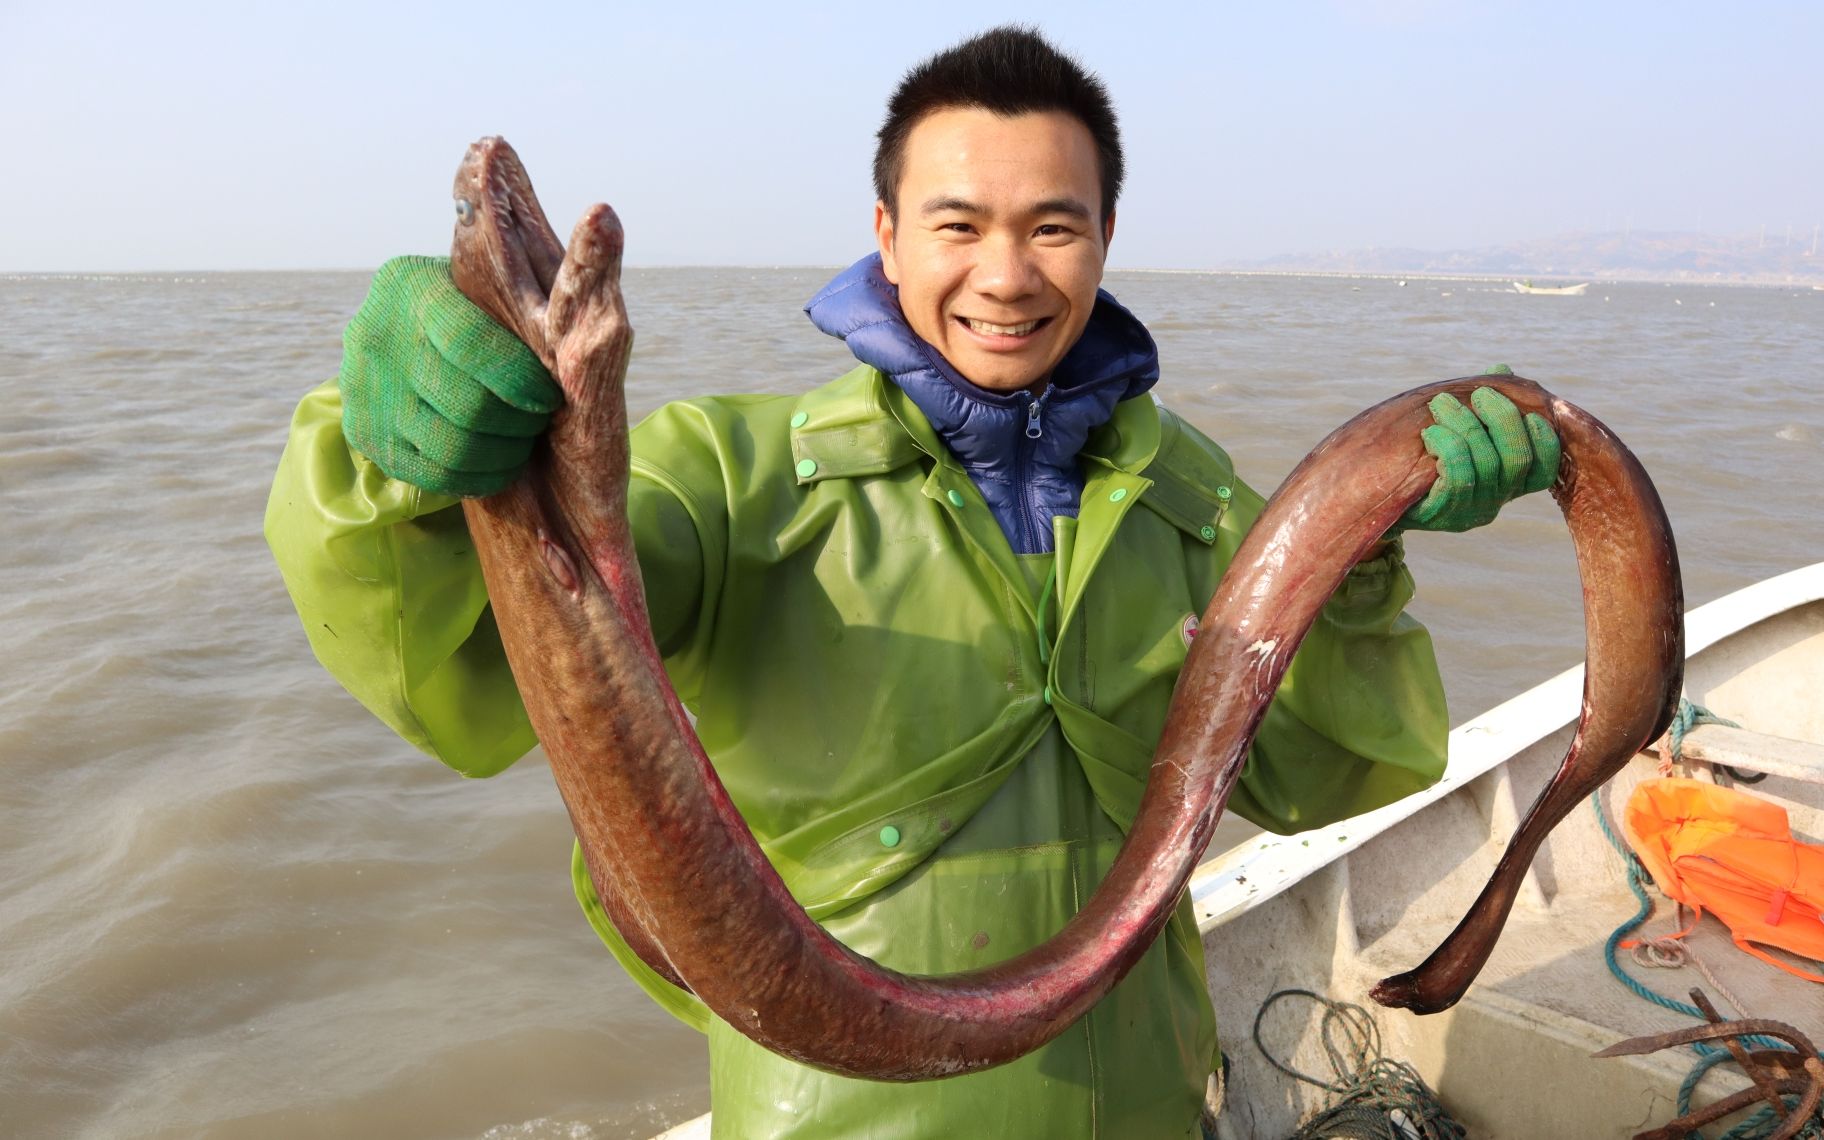 阿烽抓了条红巨鳗快2米长，卖一千多发财了，阔气的给阿鑫分几百